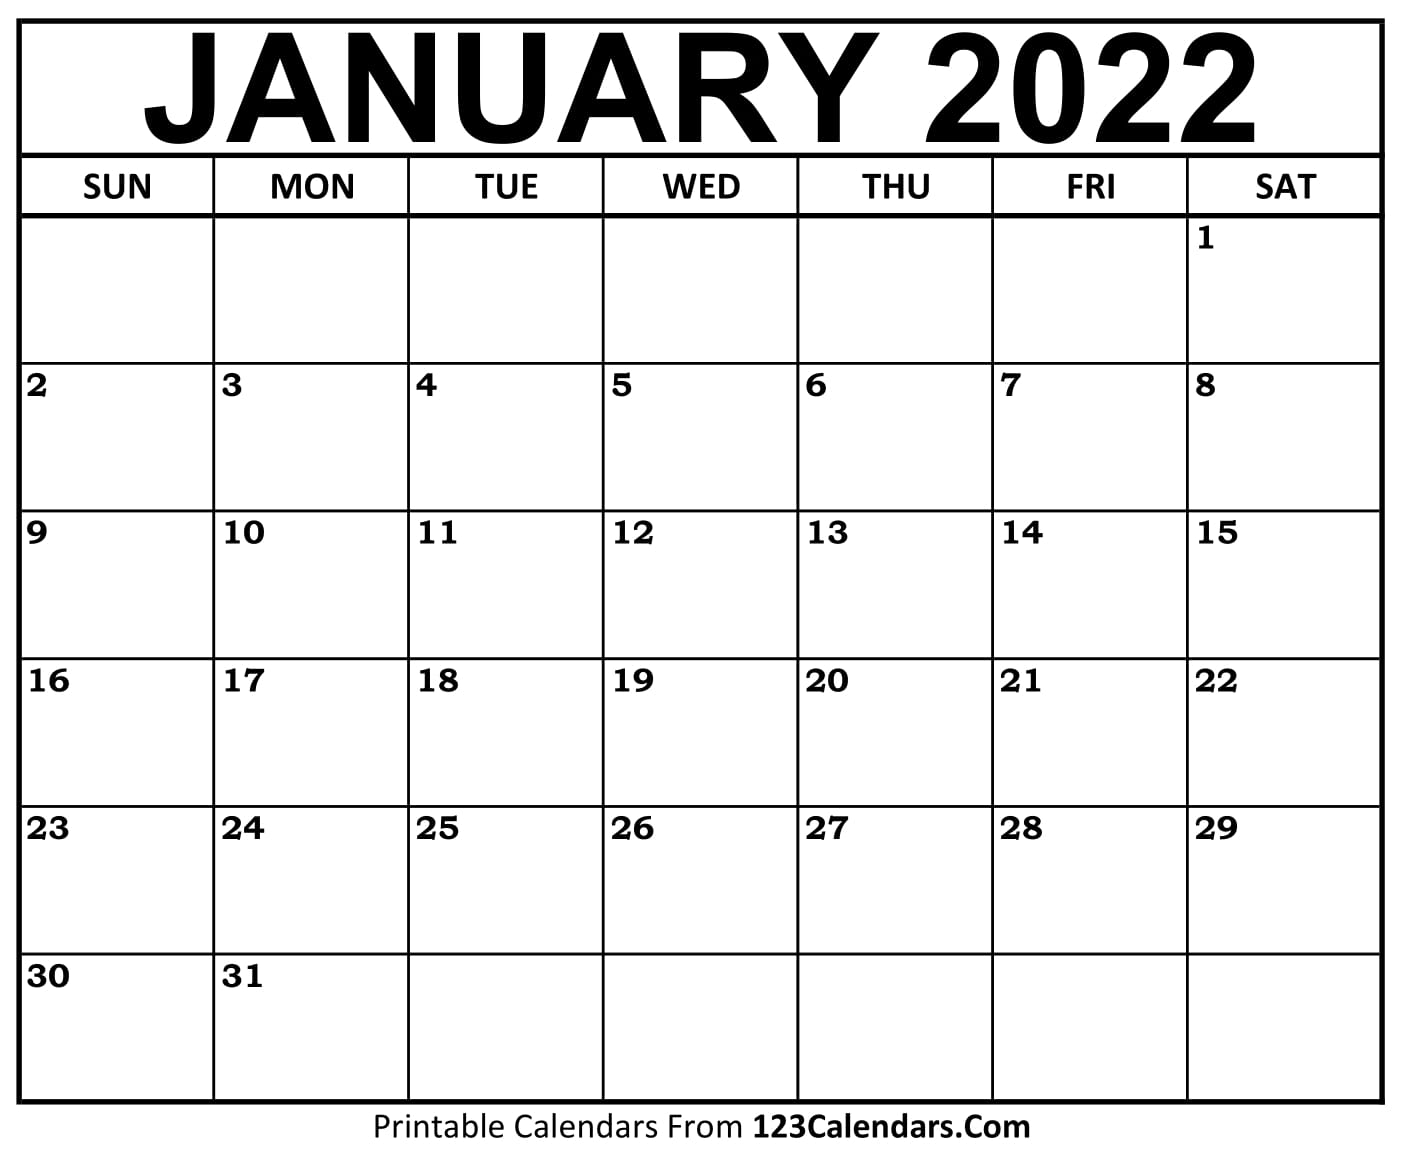 Printable January 2022 Calendar Templates 123calendars Com